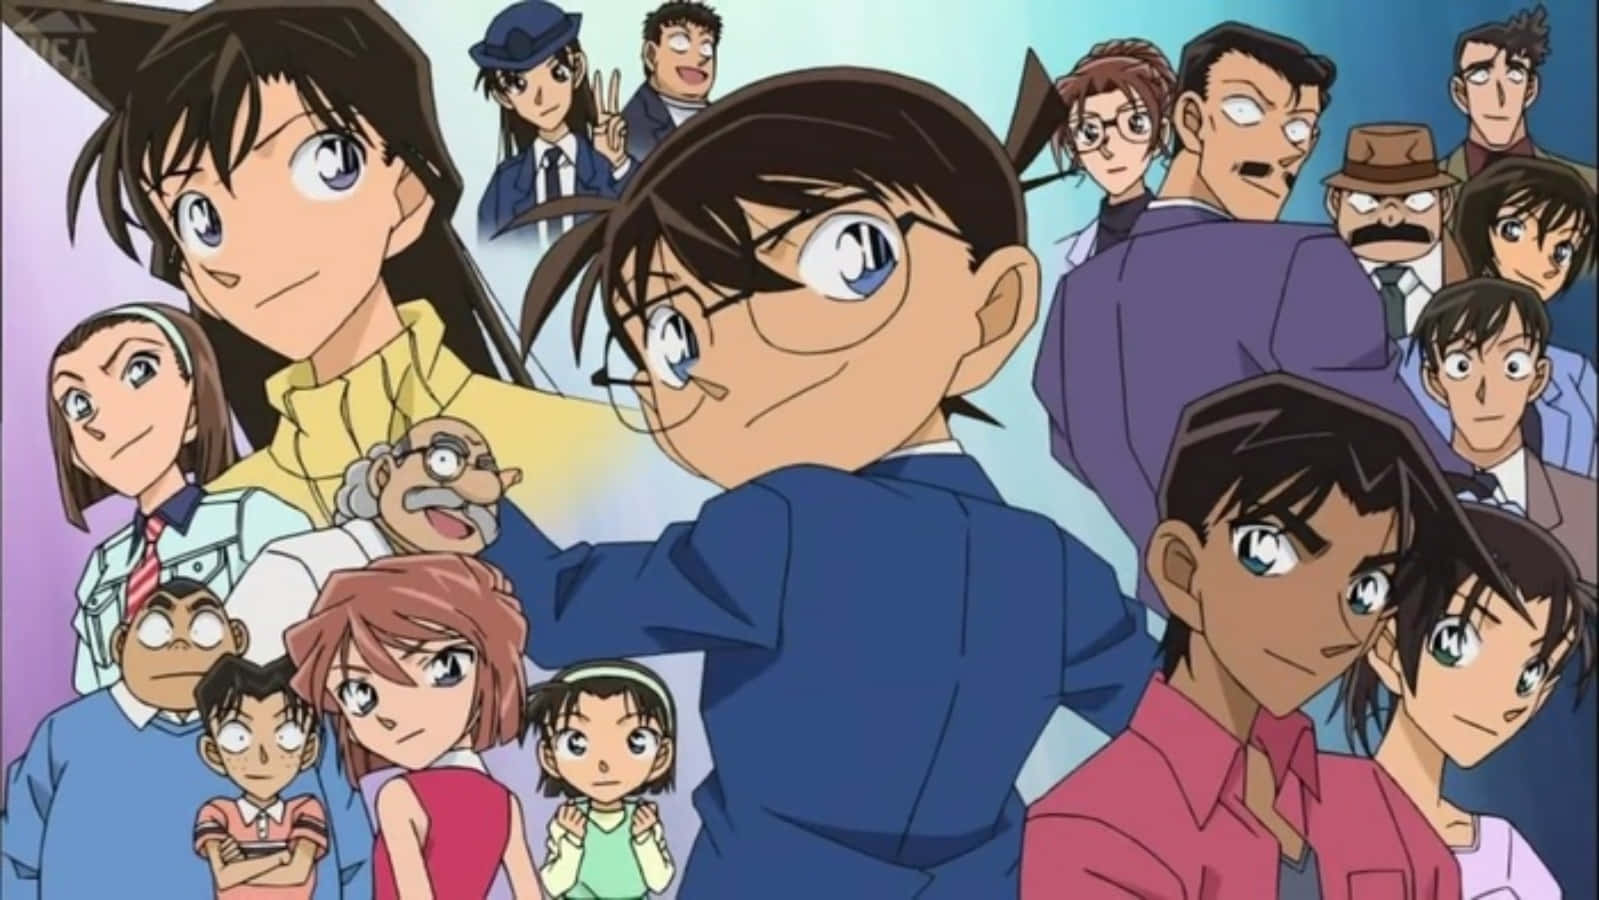 Entdeckedie Geheimnisse Von Detective Conan Mit Dem Meisterdetektiv Shinichi Kudo!